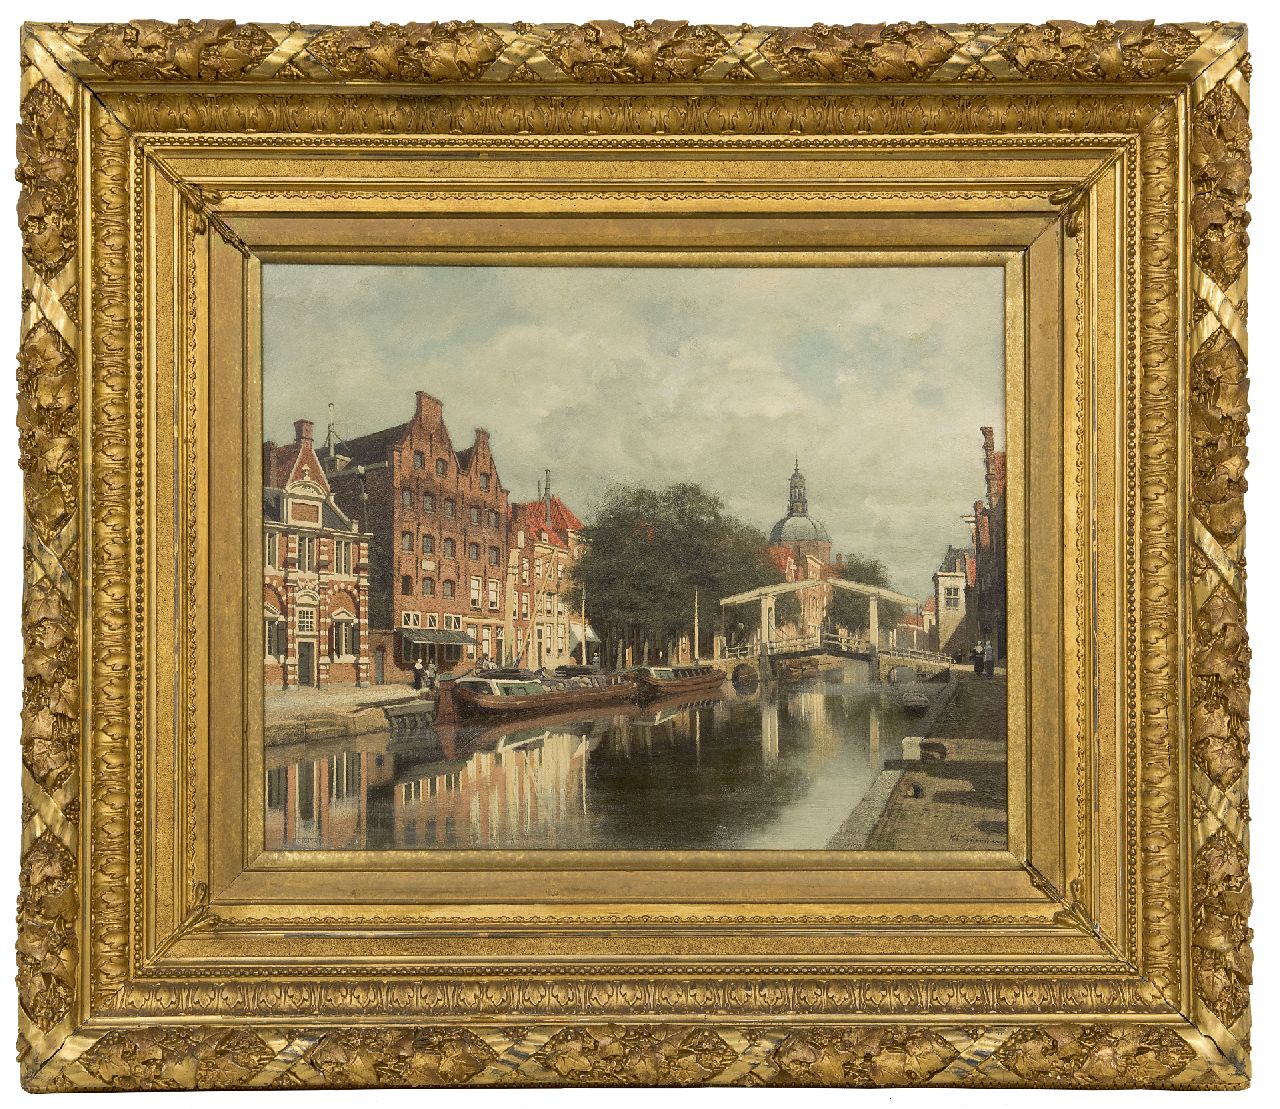 Klinkenberg J.C.K.  | Johannes Christiaan Karel Klinkenberg | Schilderijen te koop aangeboden | De Oude Rijn te Leiden met de koepel van de Marekerk, olieverf op paneel 39,3 x 51,0 cm, gesigneerd rechtsonder